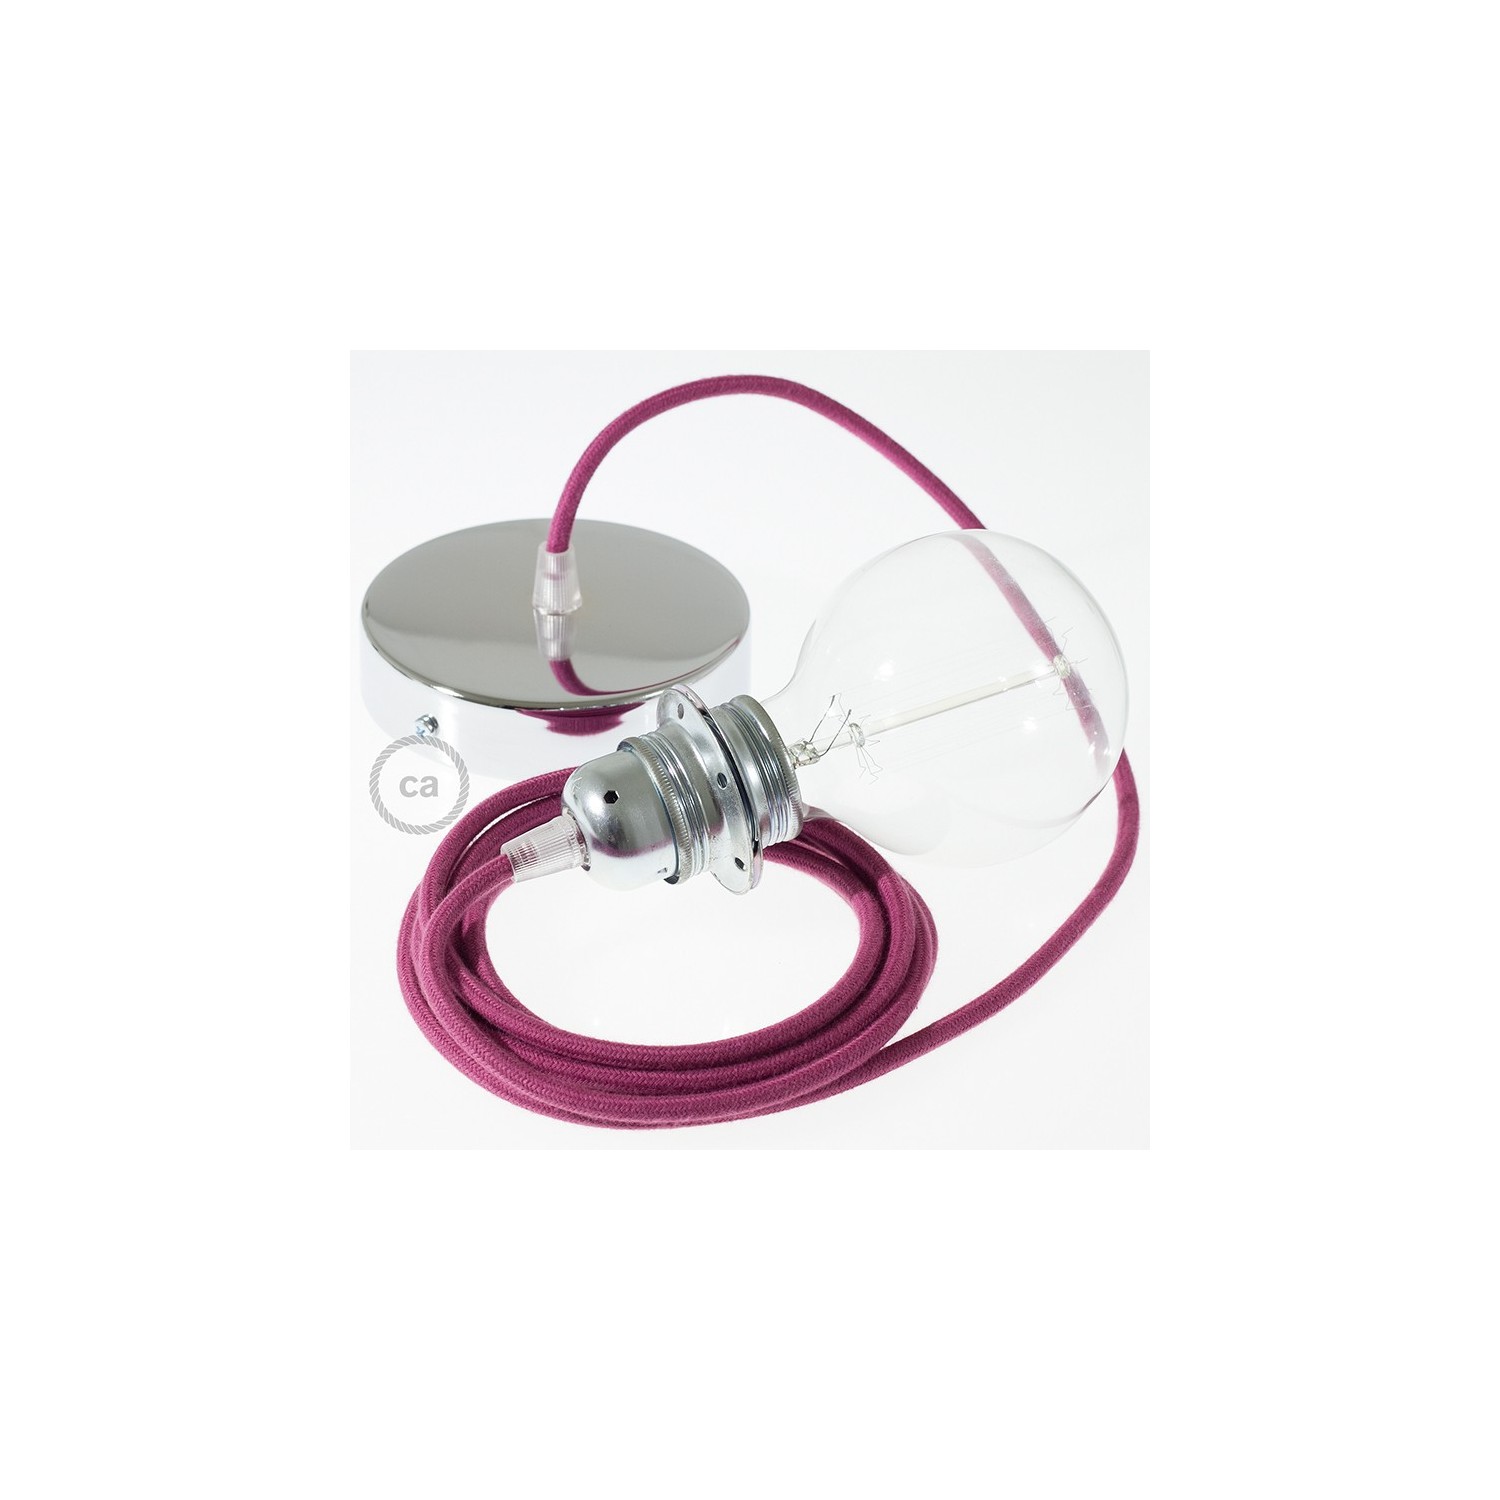 Pendel para pantalla, lámpara colgante cable textil Rojo Violeta Algodón RC32